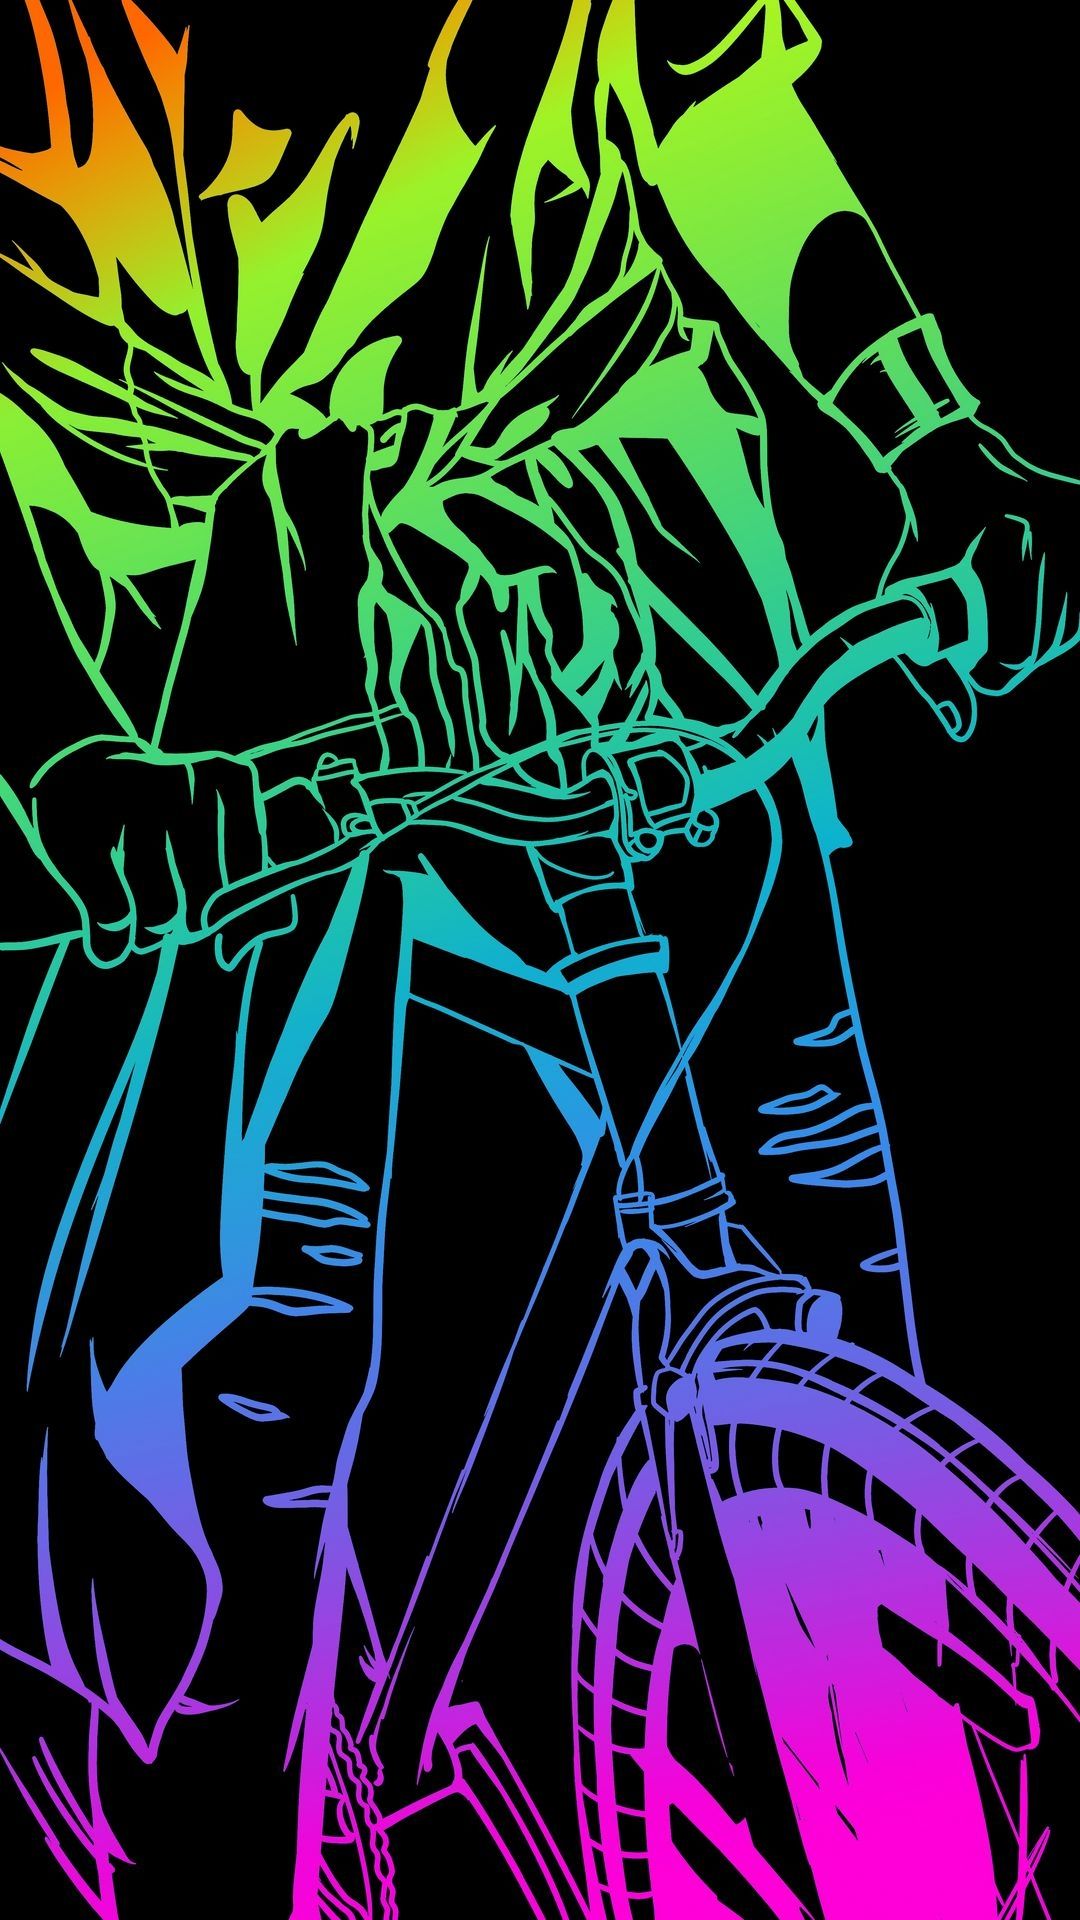 Neon Bike Wallpapers